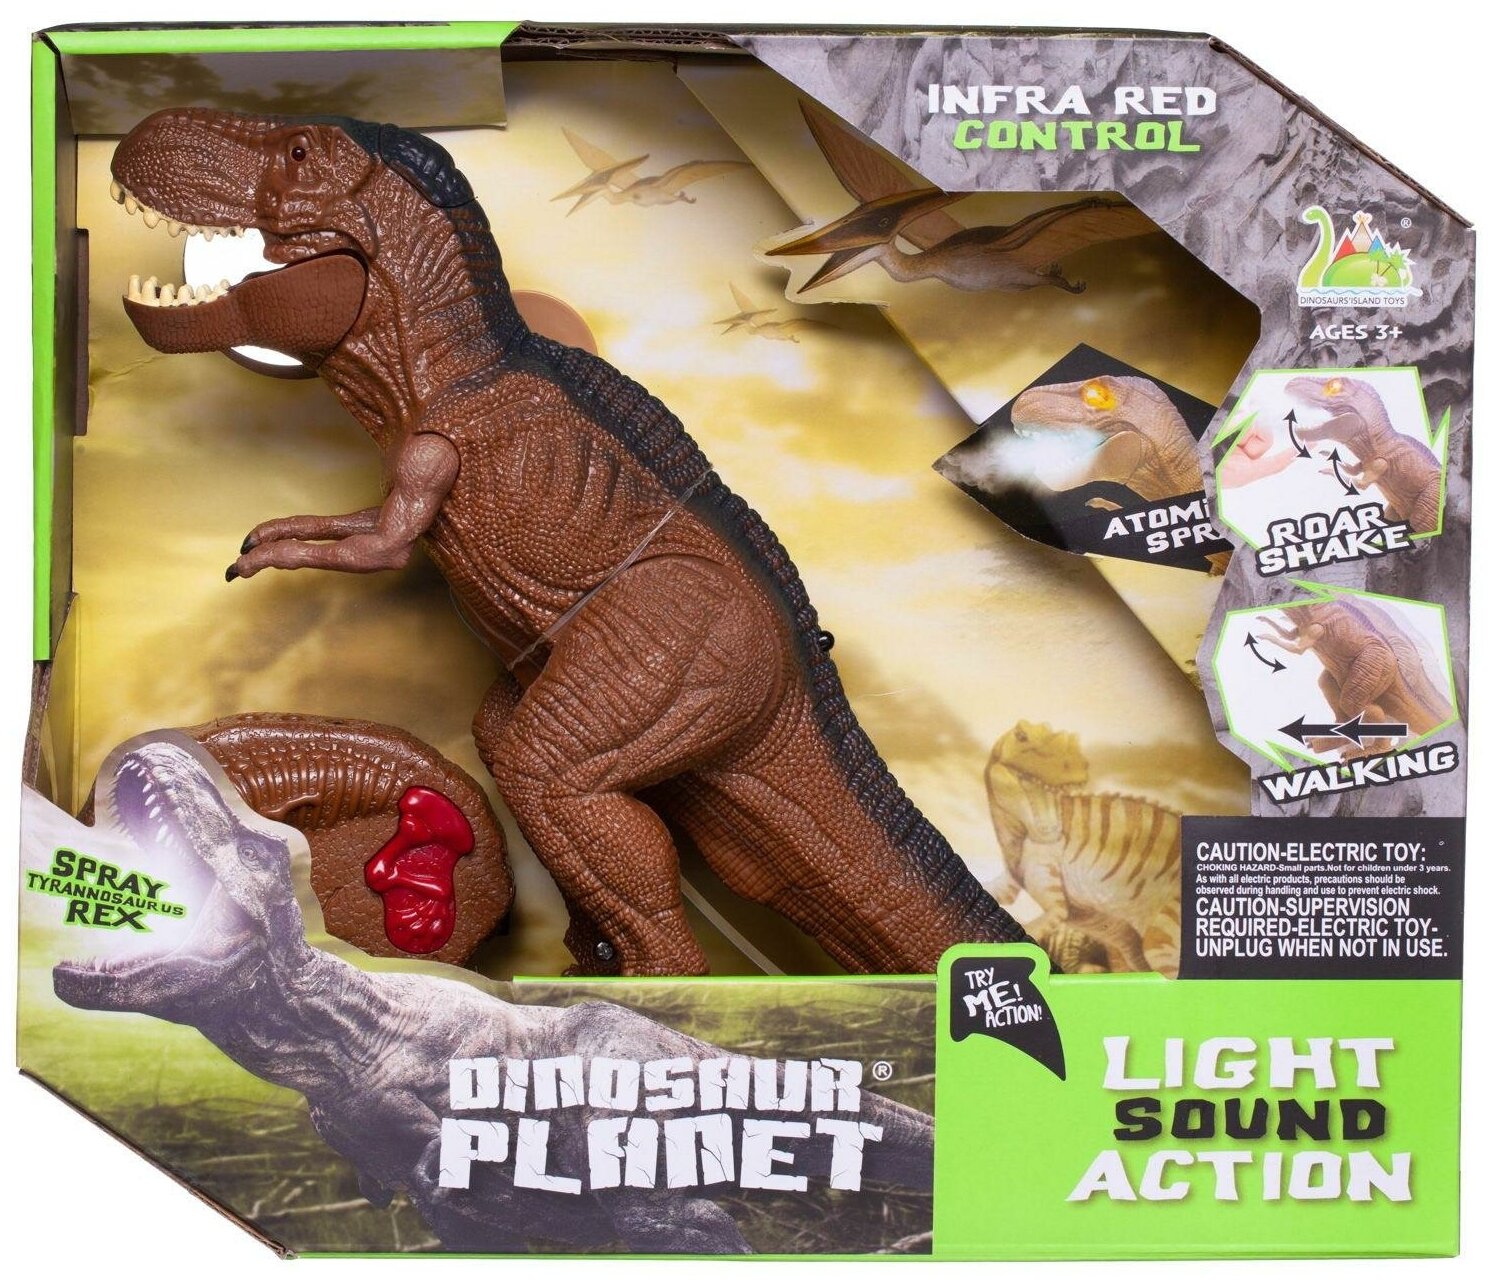 Интерактивная игрушка Junfa Динозавр Тиранозавр Рекс на радиоуправление